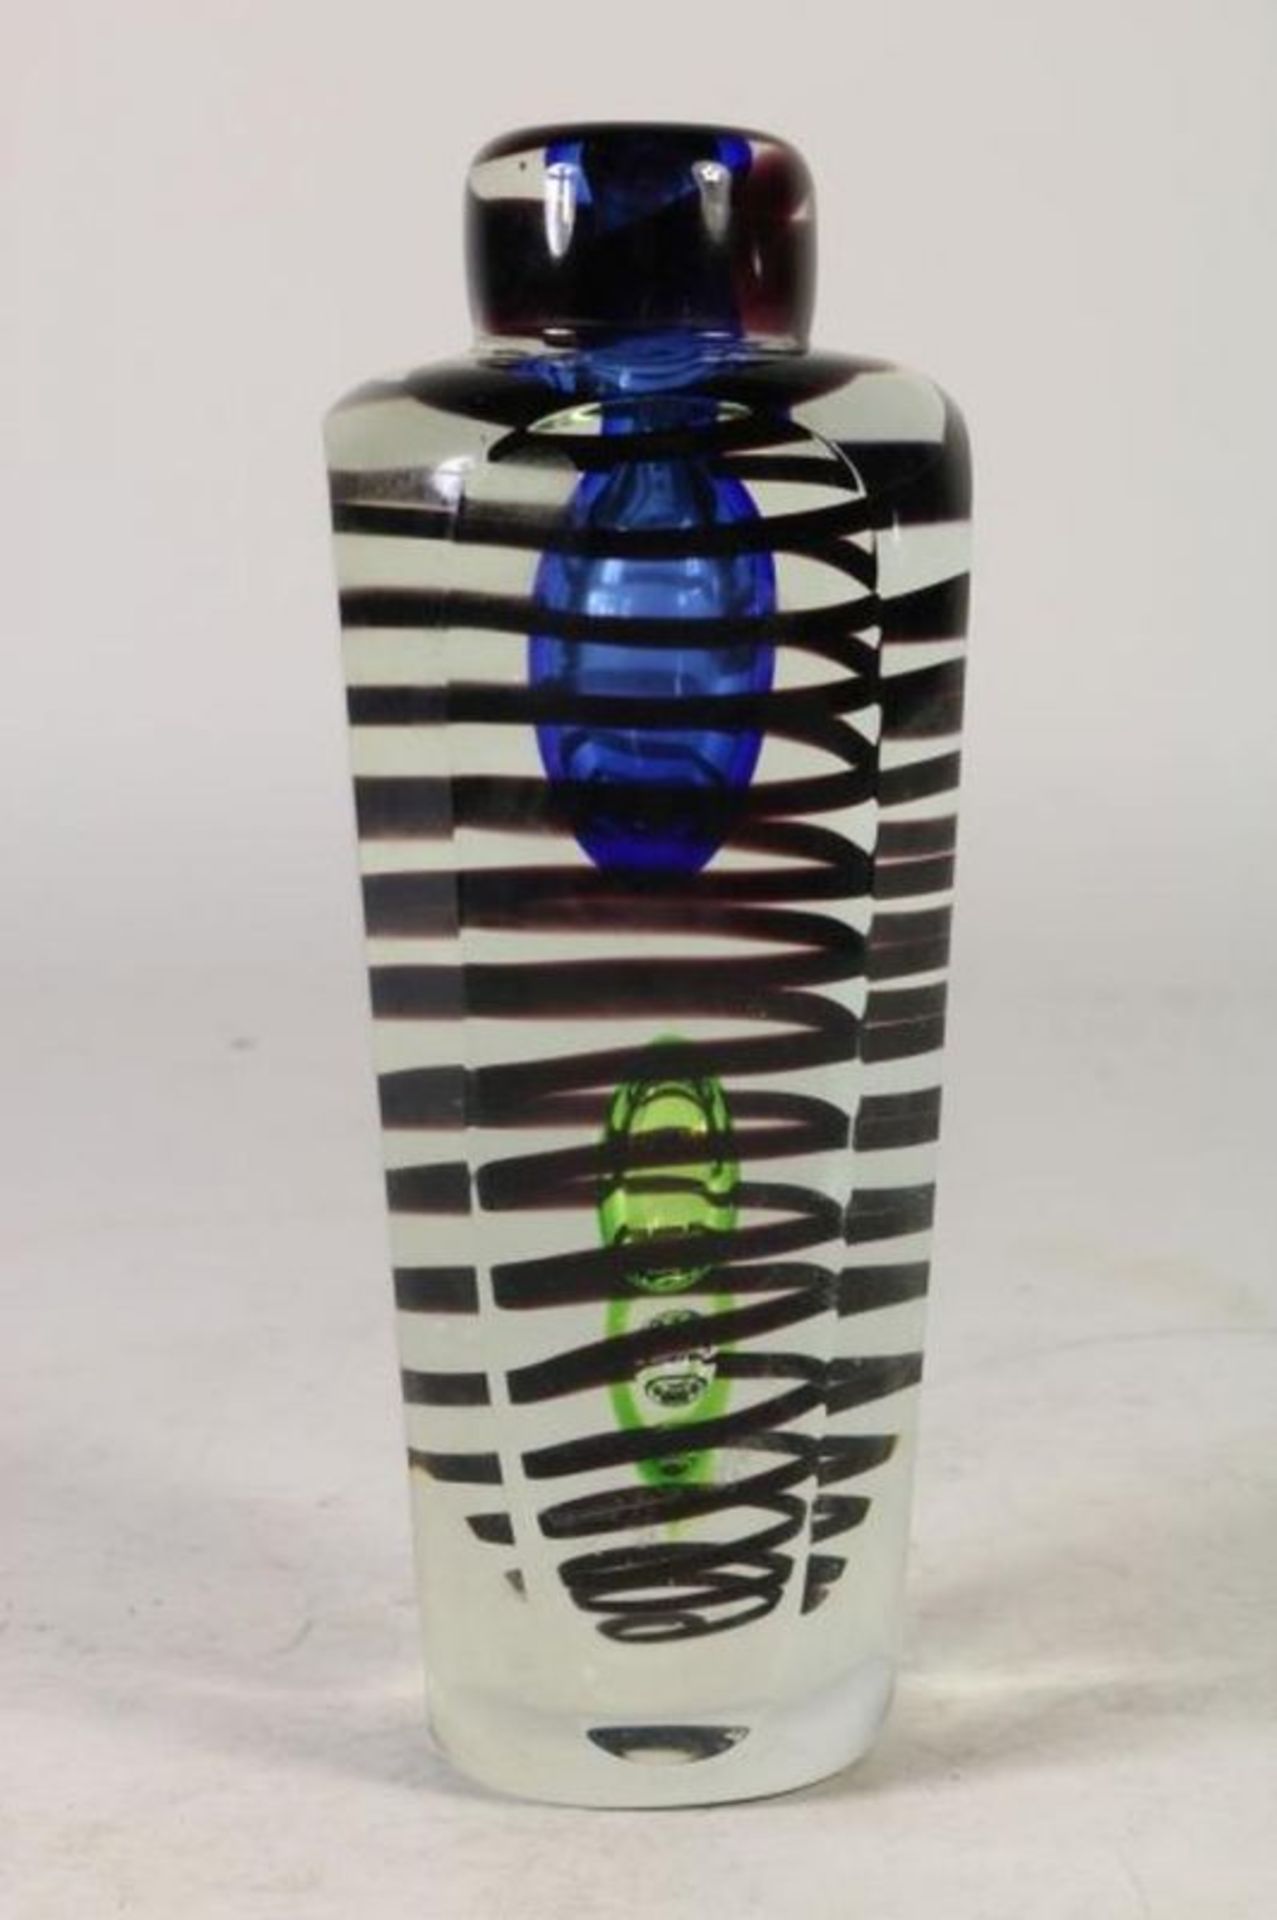 Polychroom dik glazen vaas met geblazen glasbellen en spiraal, h. 21 cm. Polychrome glass vase, h.